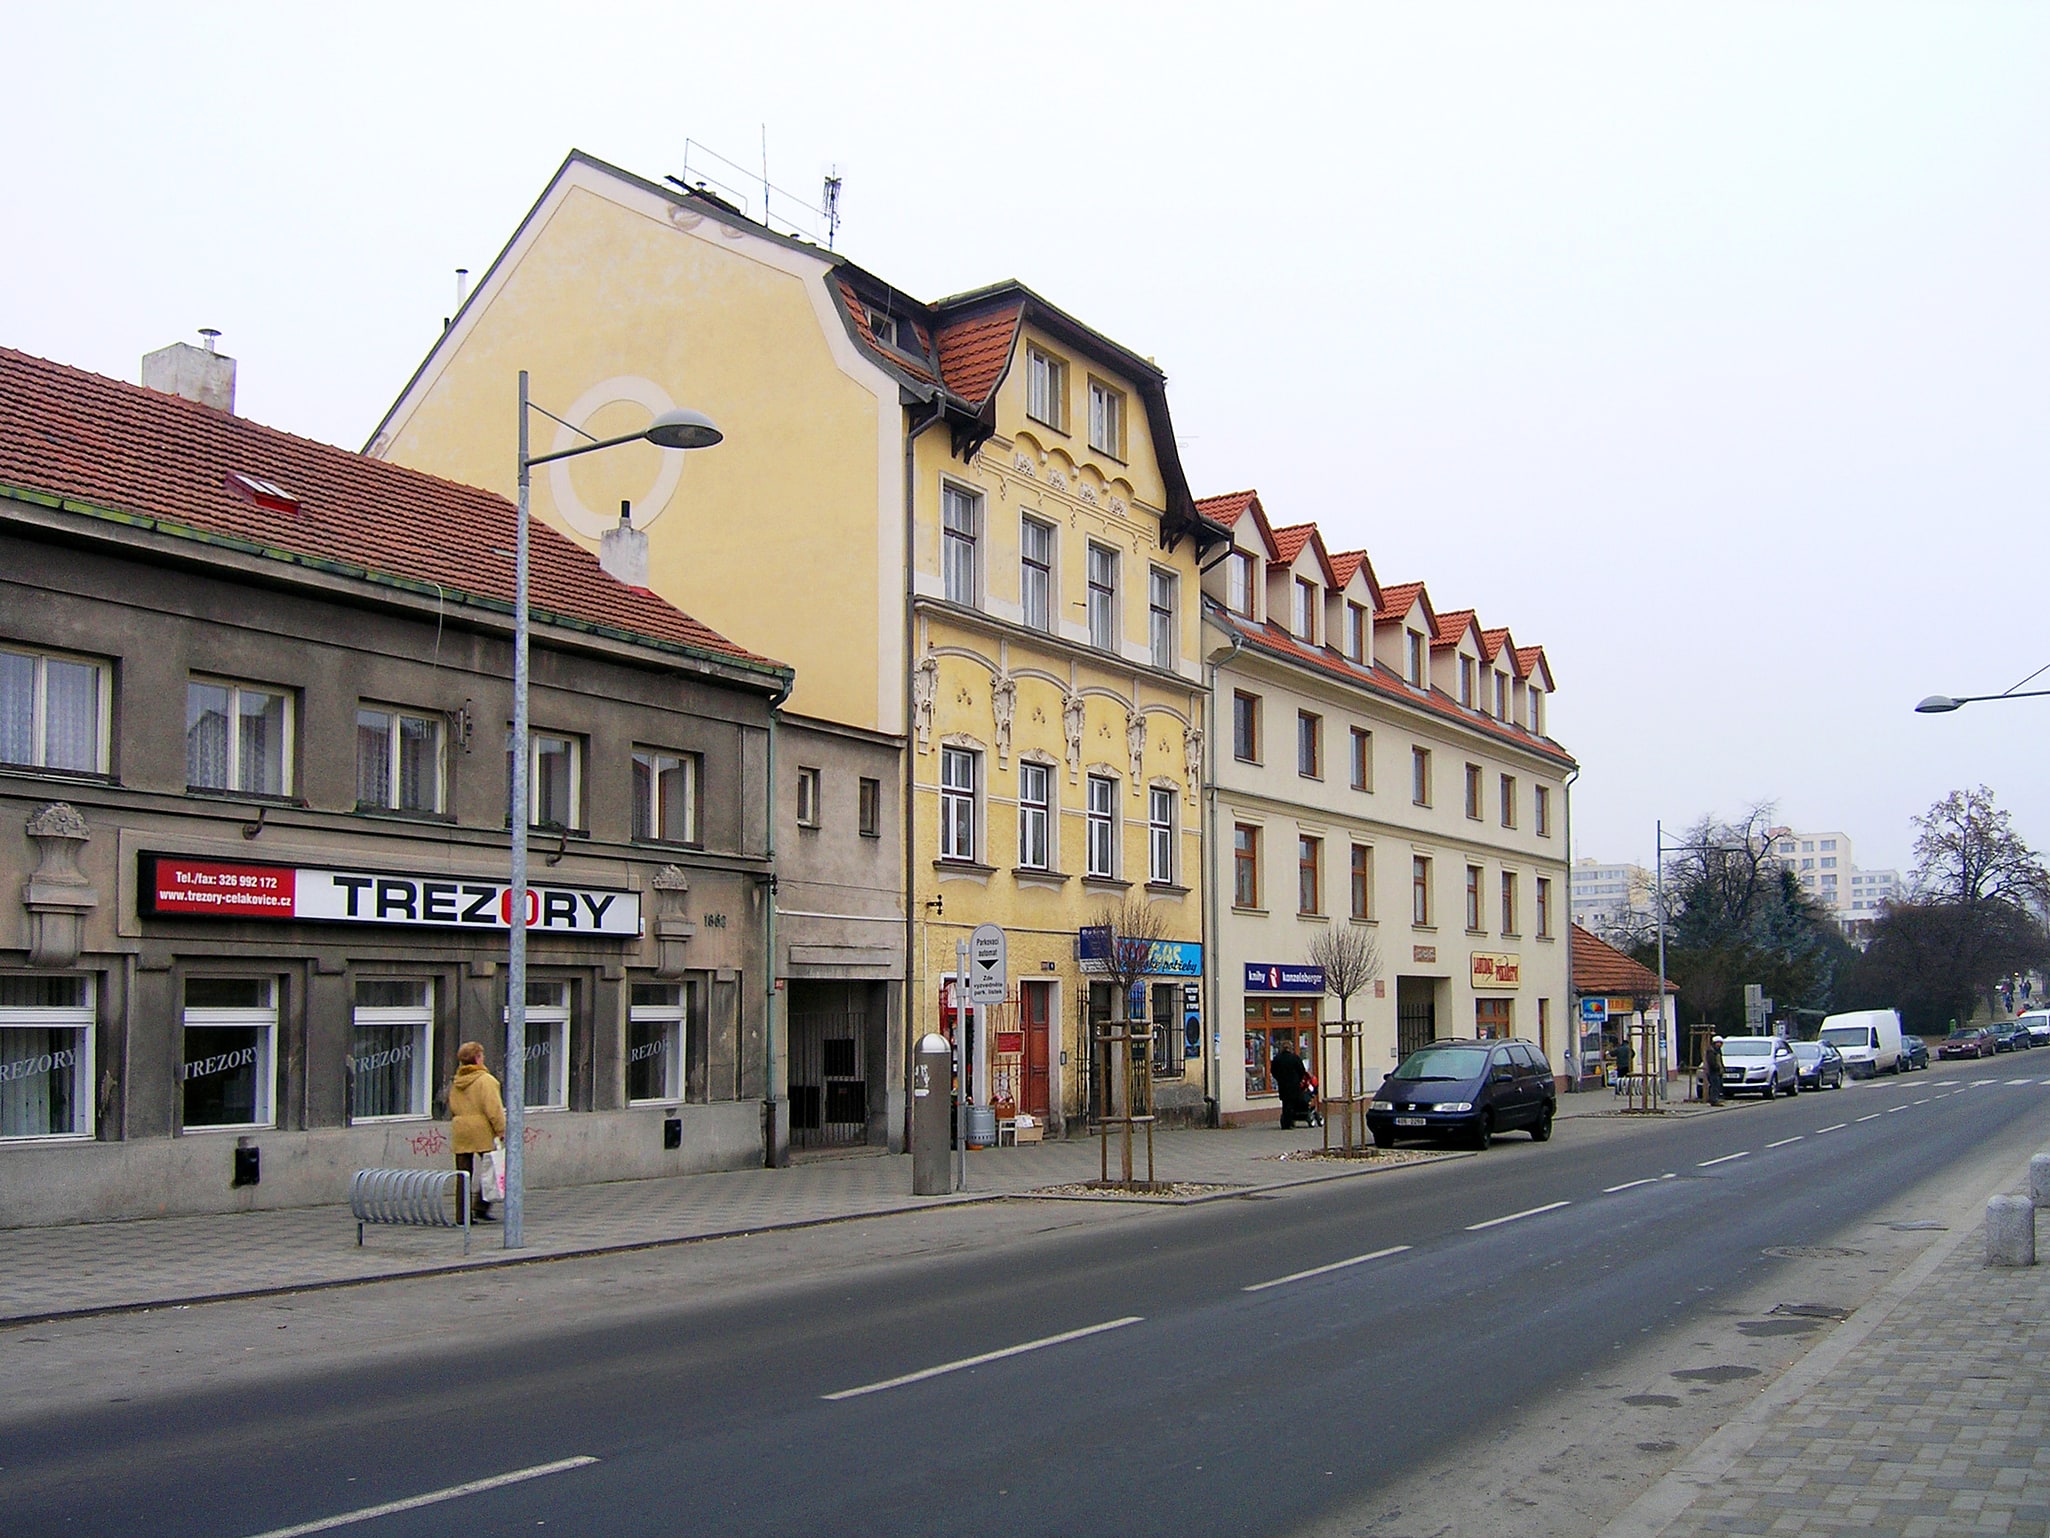 Čelákovice, República Checa